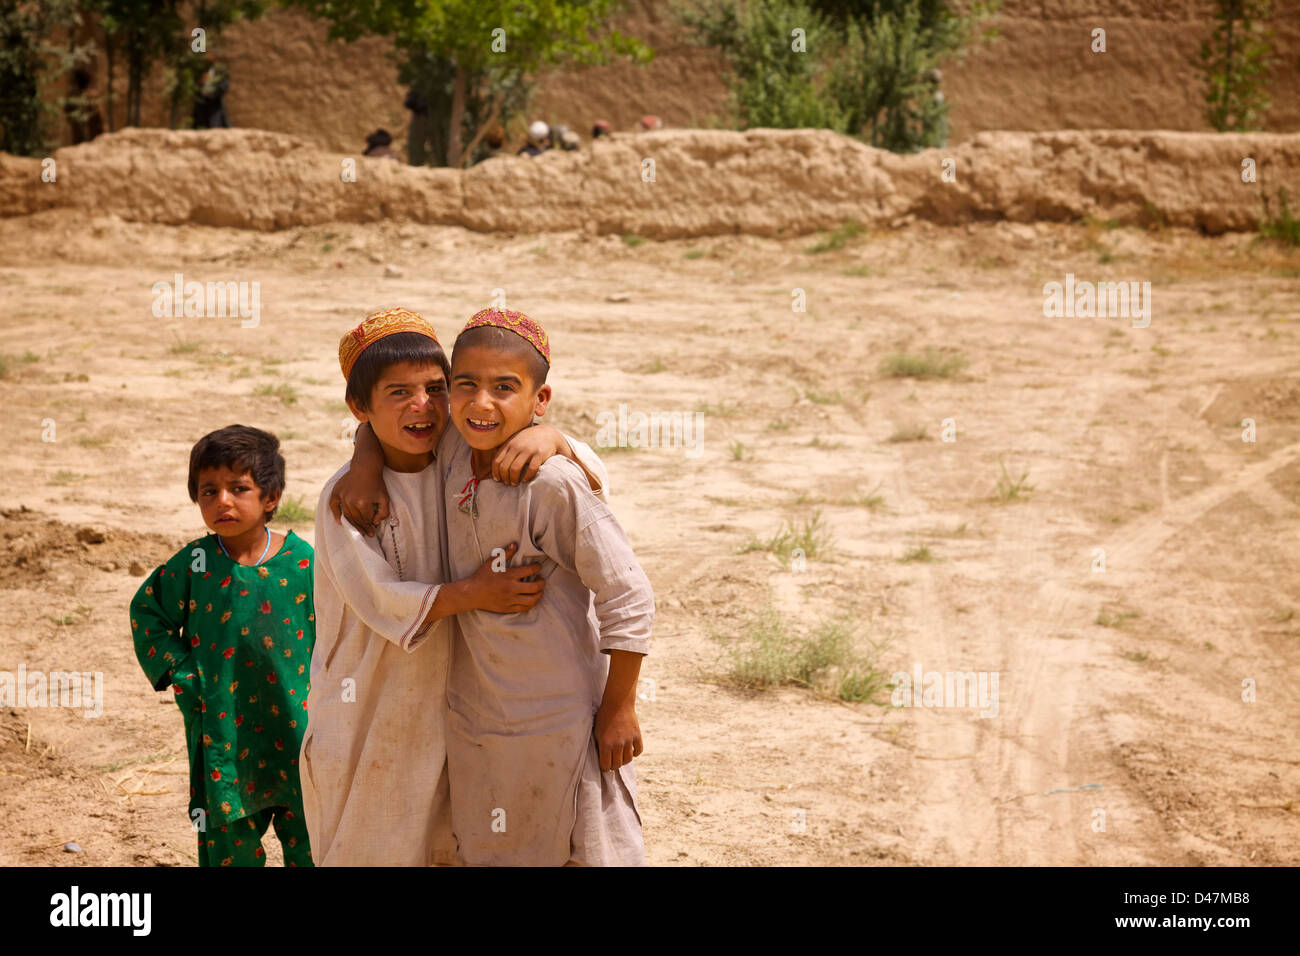 A Kandahar, Afghanistan - 8 Maggio 2010: due amici afgani posano per una foto. Foto Stock